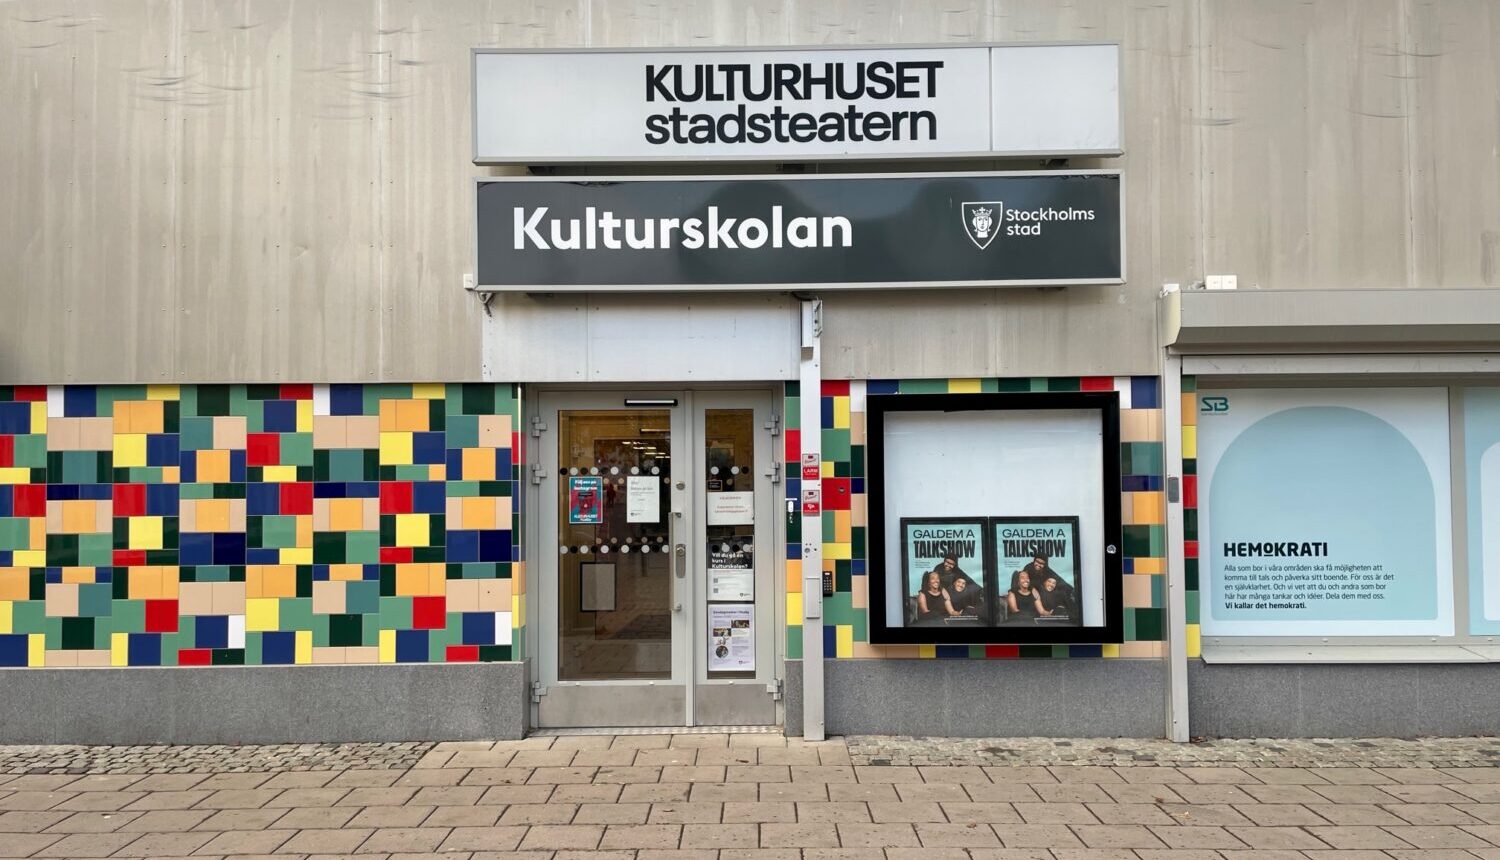 Entrén till Kulturhuset stadsteatern Husby